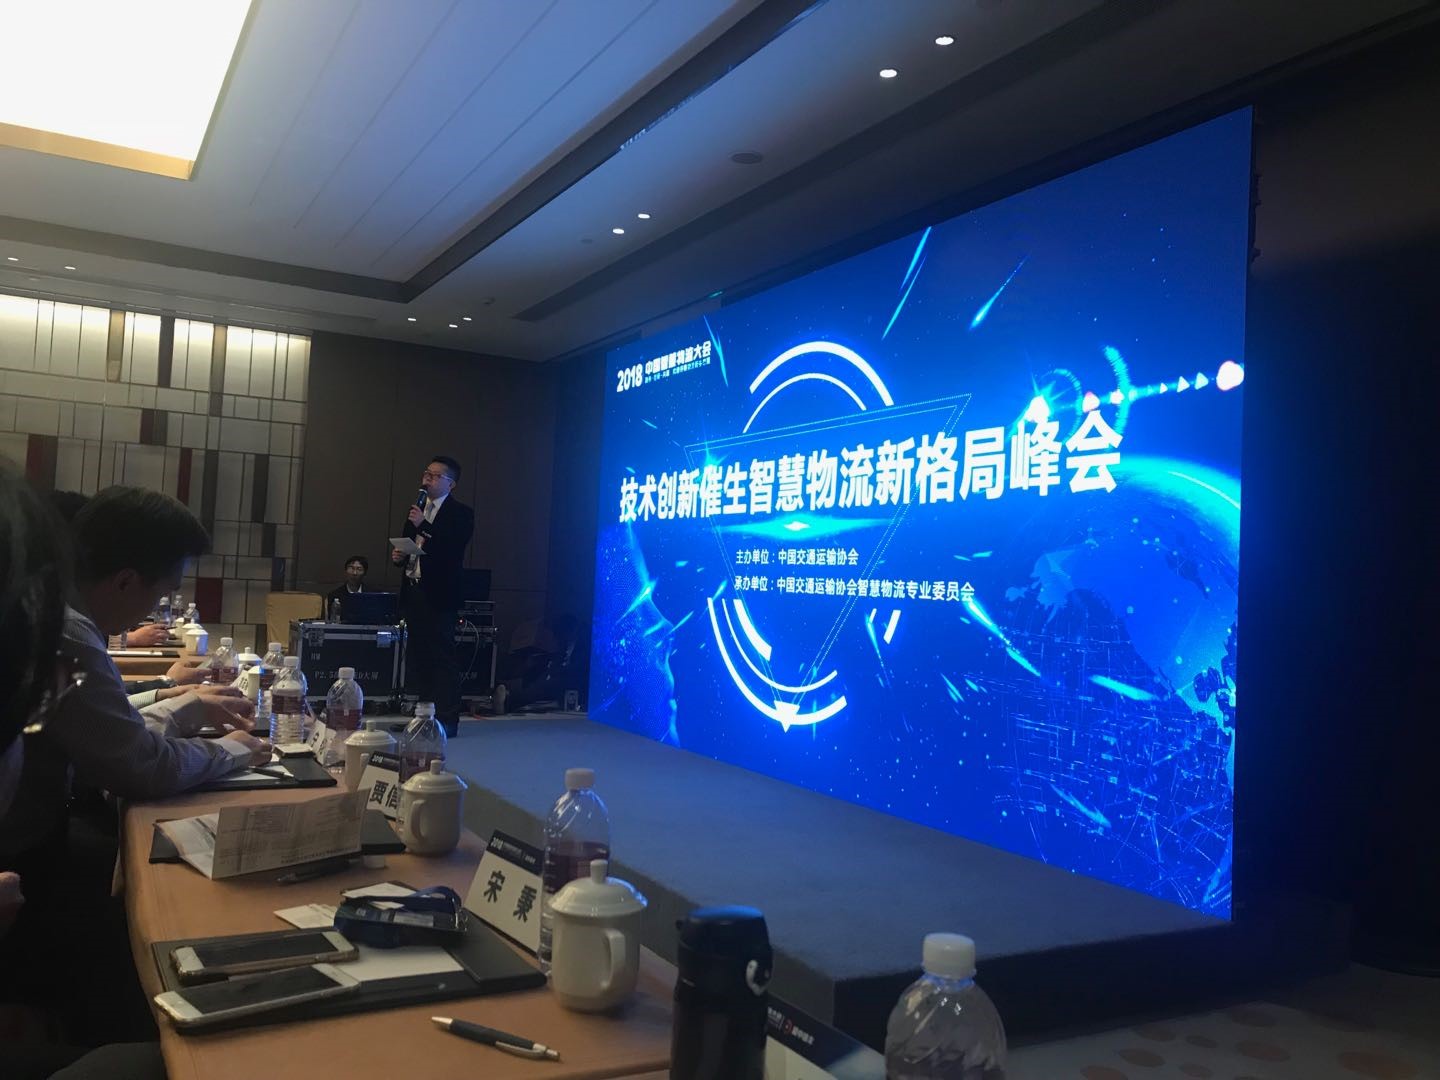 2018中国智慧物流大会 | 宝开分享AI技术在智慧物流领域的应用与发展